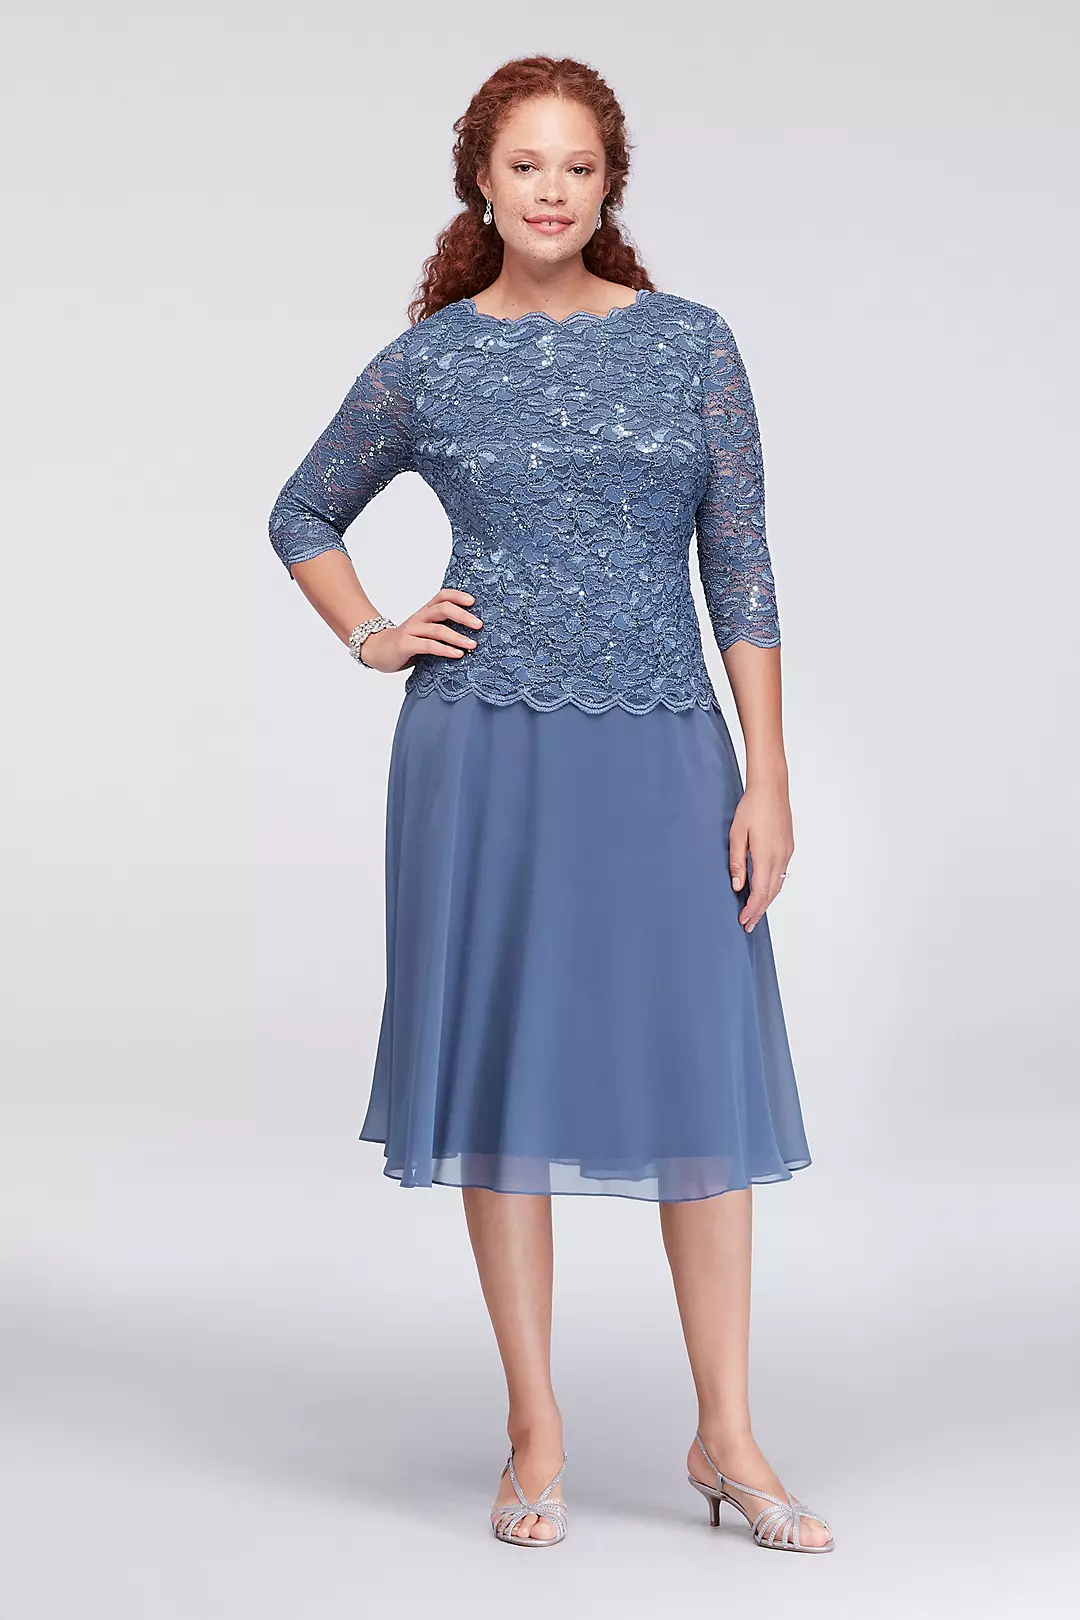 Scalloped Lace and Chiffon Plus Size Short Dress Image